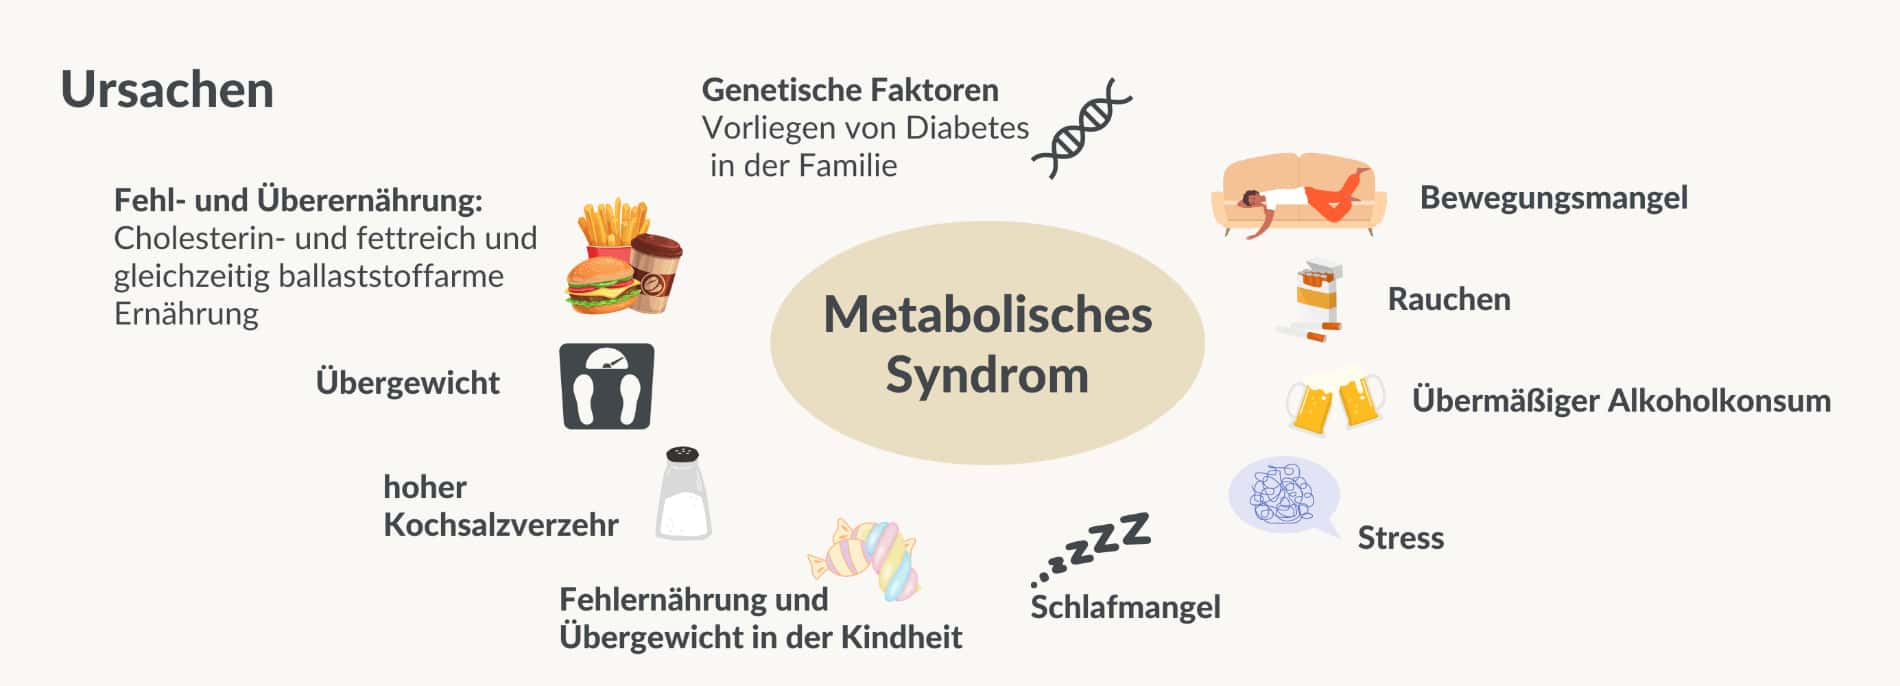 Die Ursachen des metabolischen Syndroms